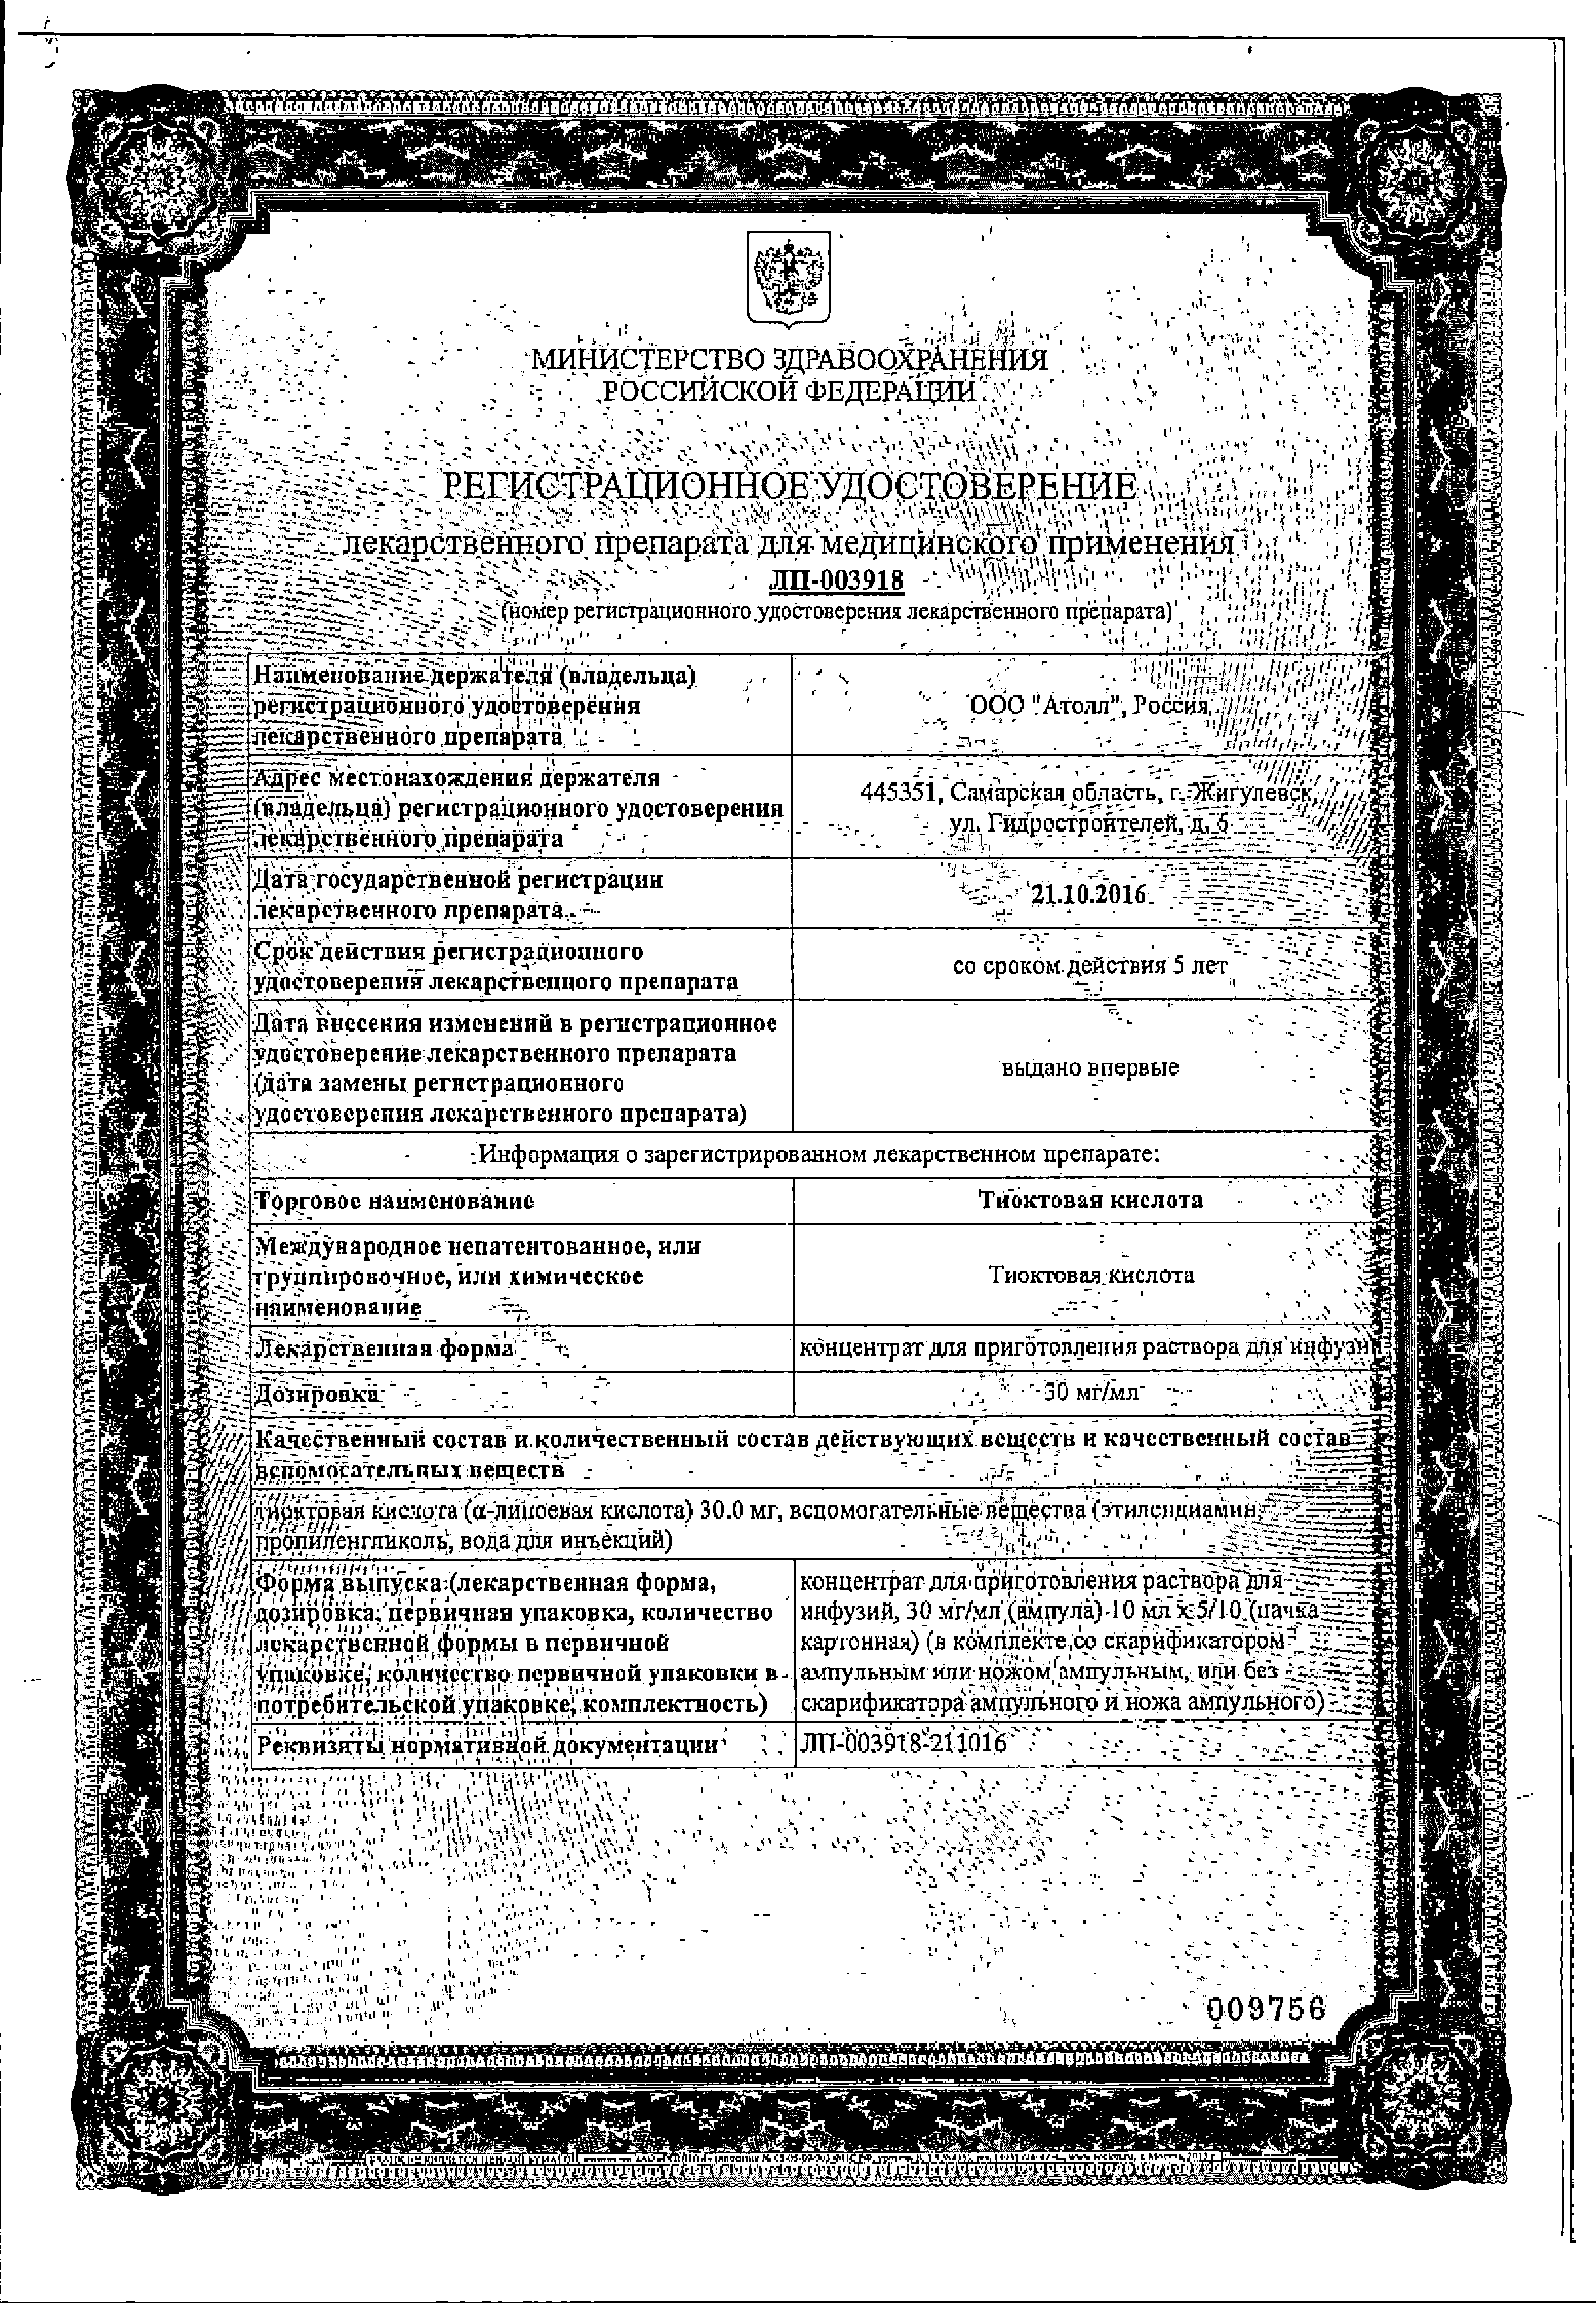 Тиоктовая кислота сертификат